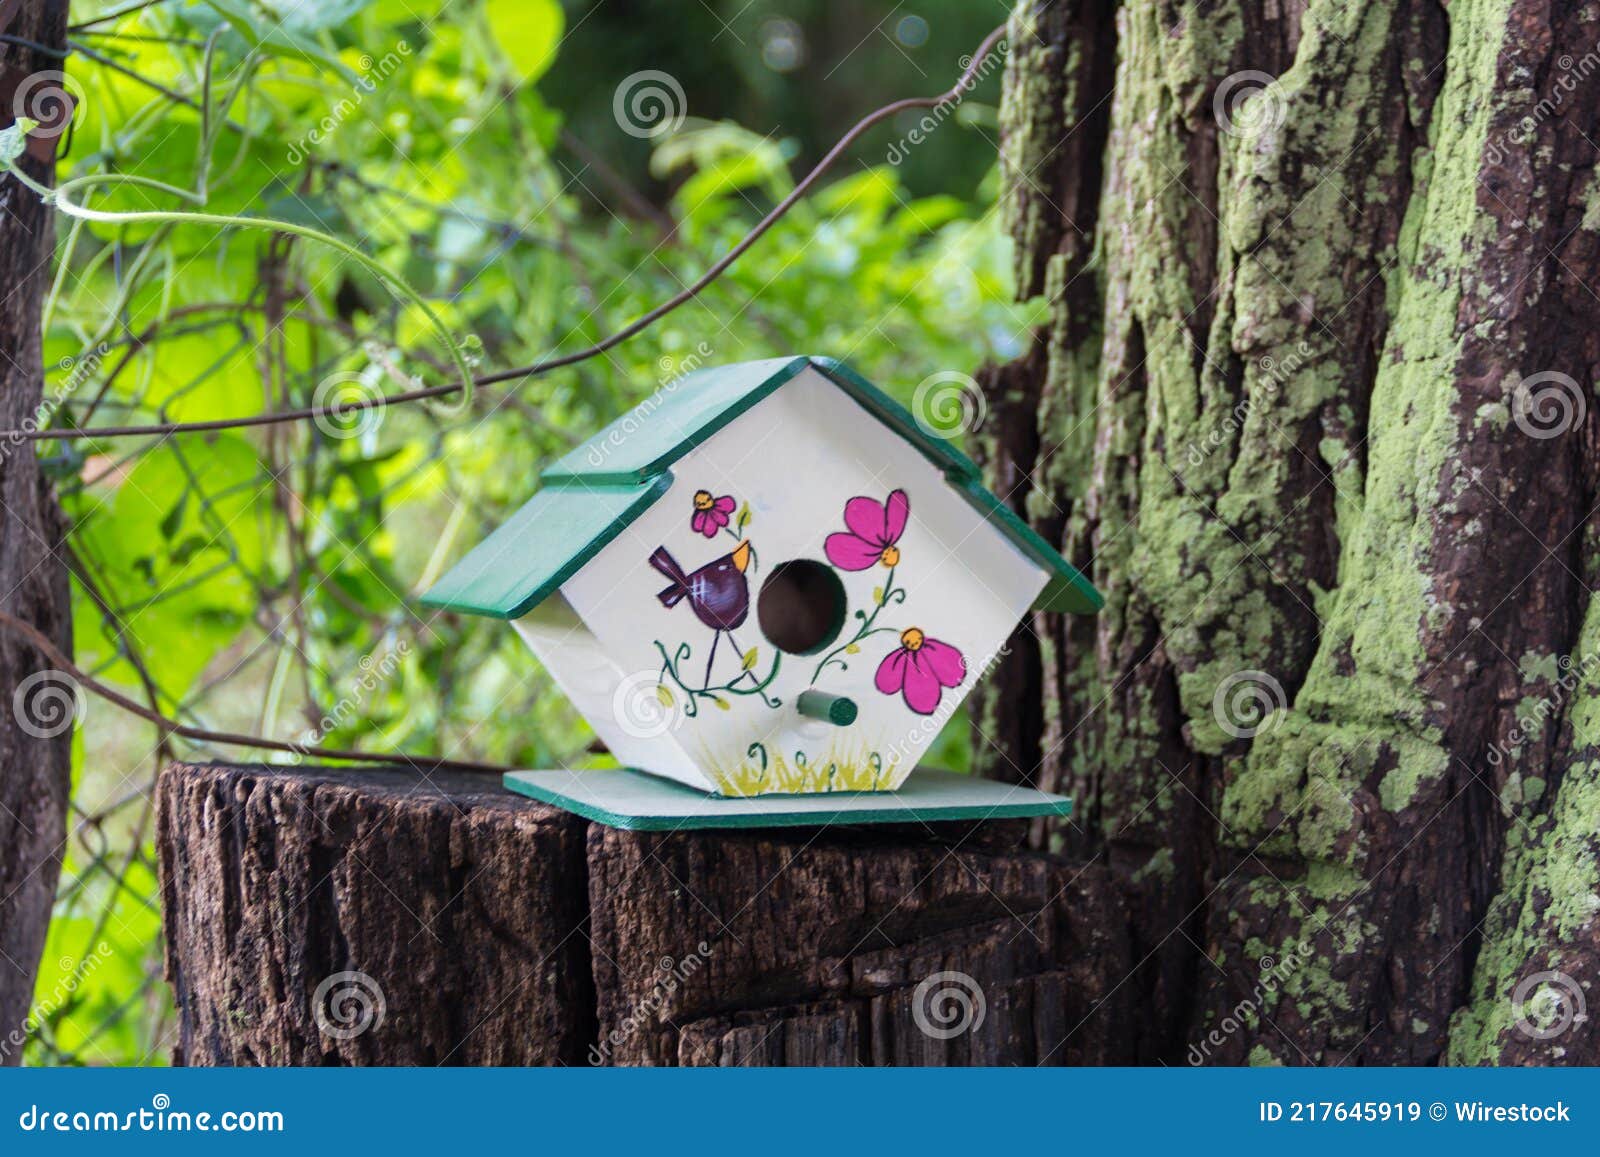 Casas Artesanales Para Pájaros Pintadas a Mano En El Tronco De